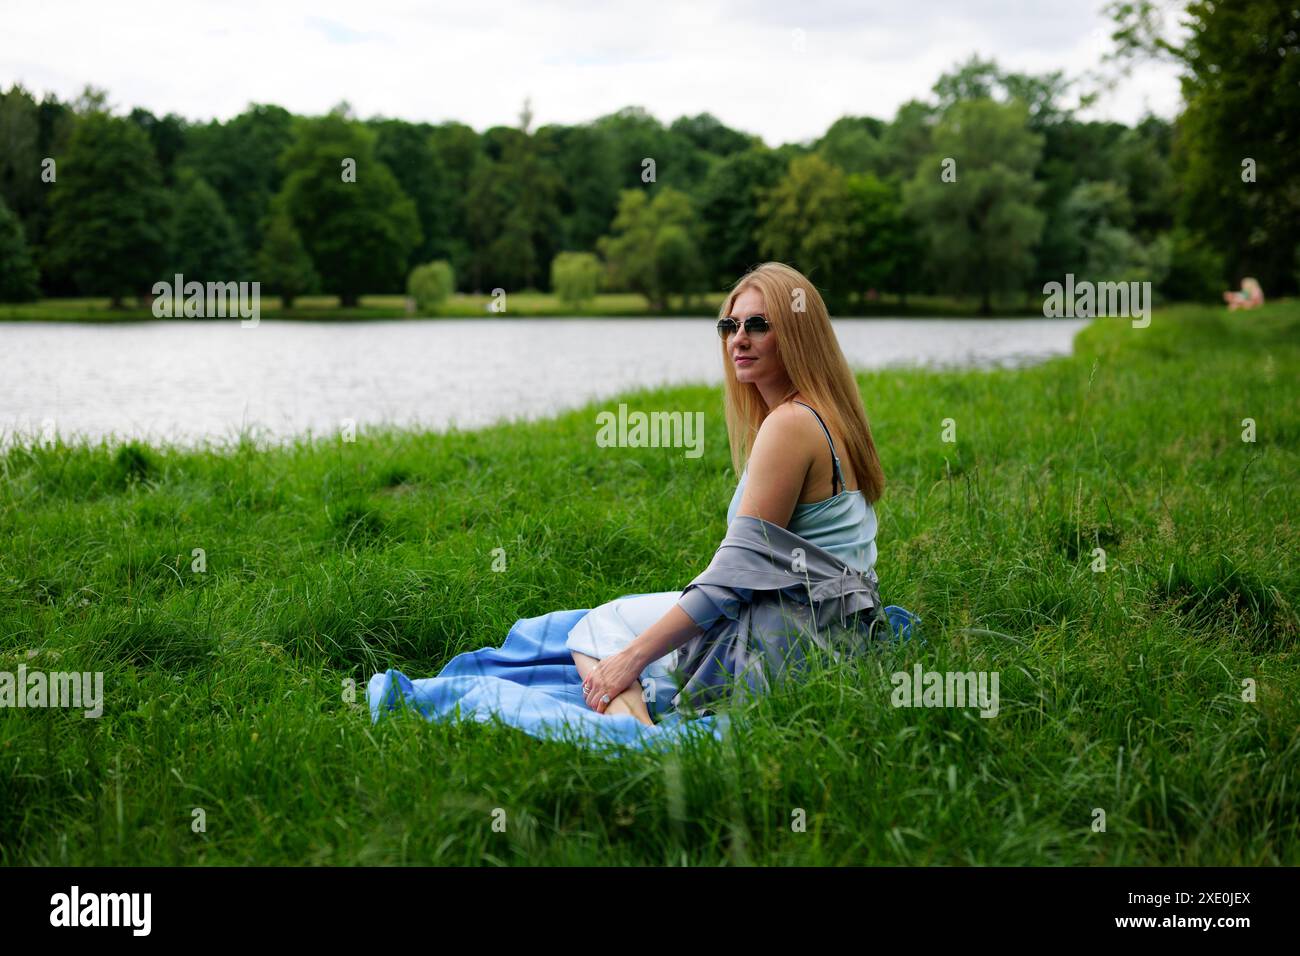 Une femme se détache sur une couverture au bord du lac, entourée d'herbe verte Banque D'Images